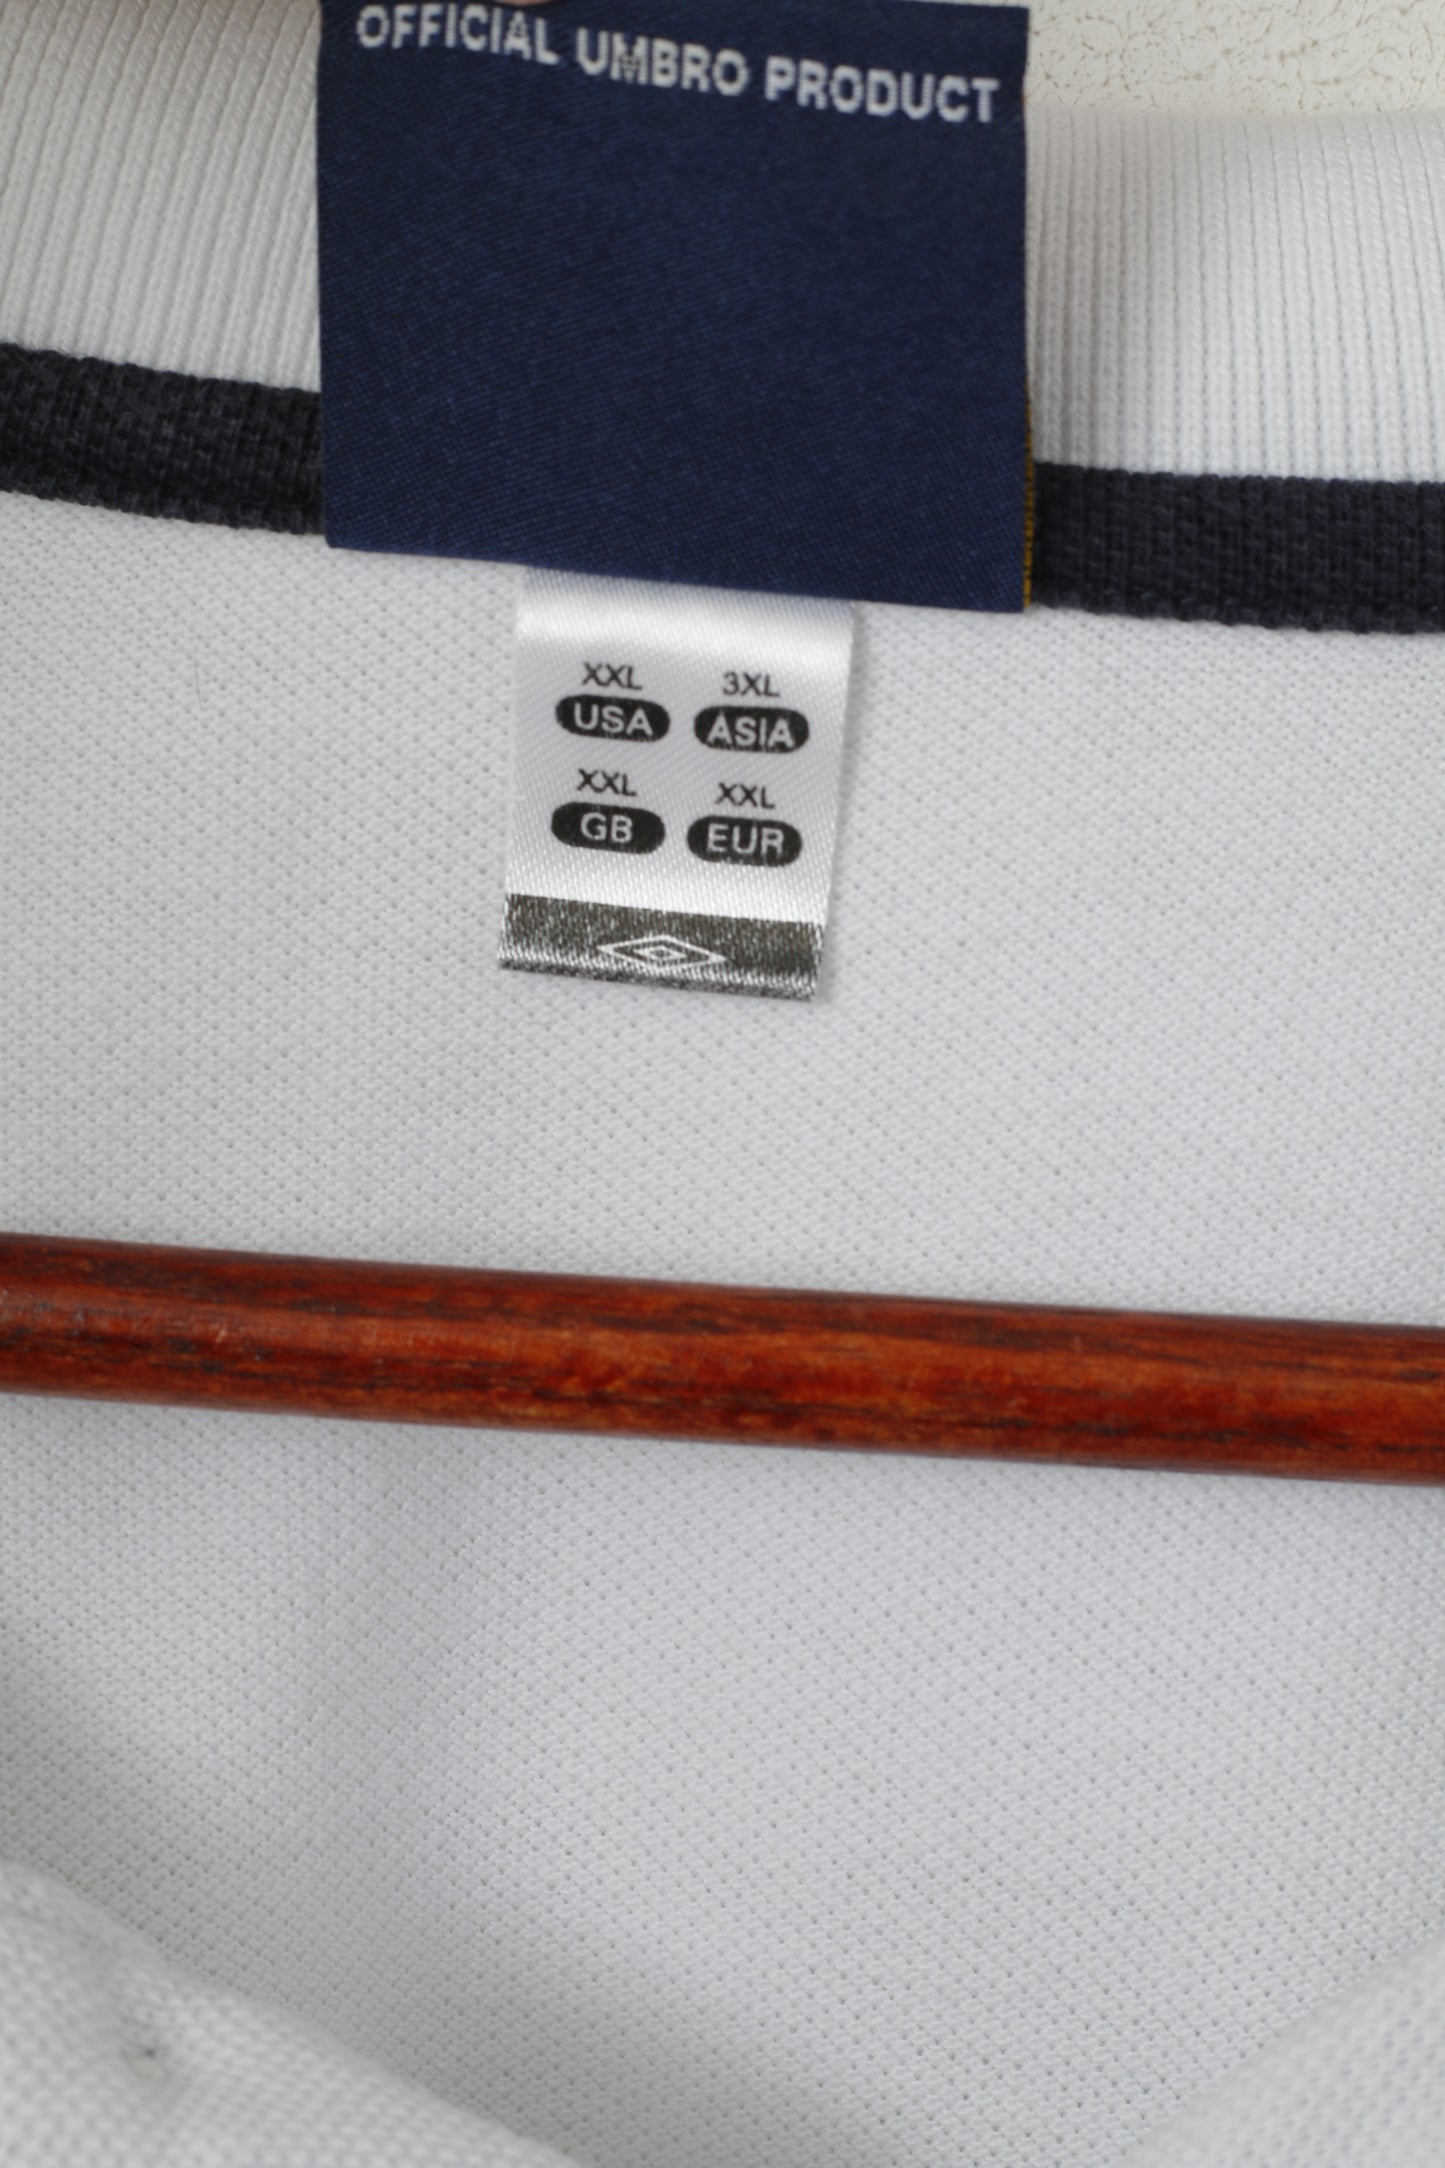 Polo Umbro da uomo XXL in cotone bianco, maglietta della squadra nazionale di calcio inglese